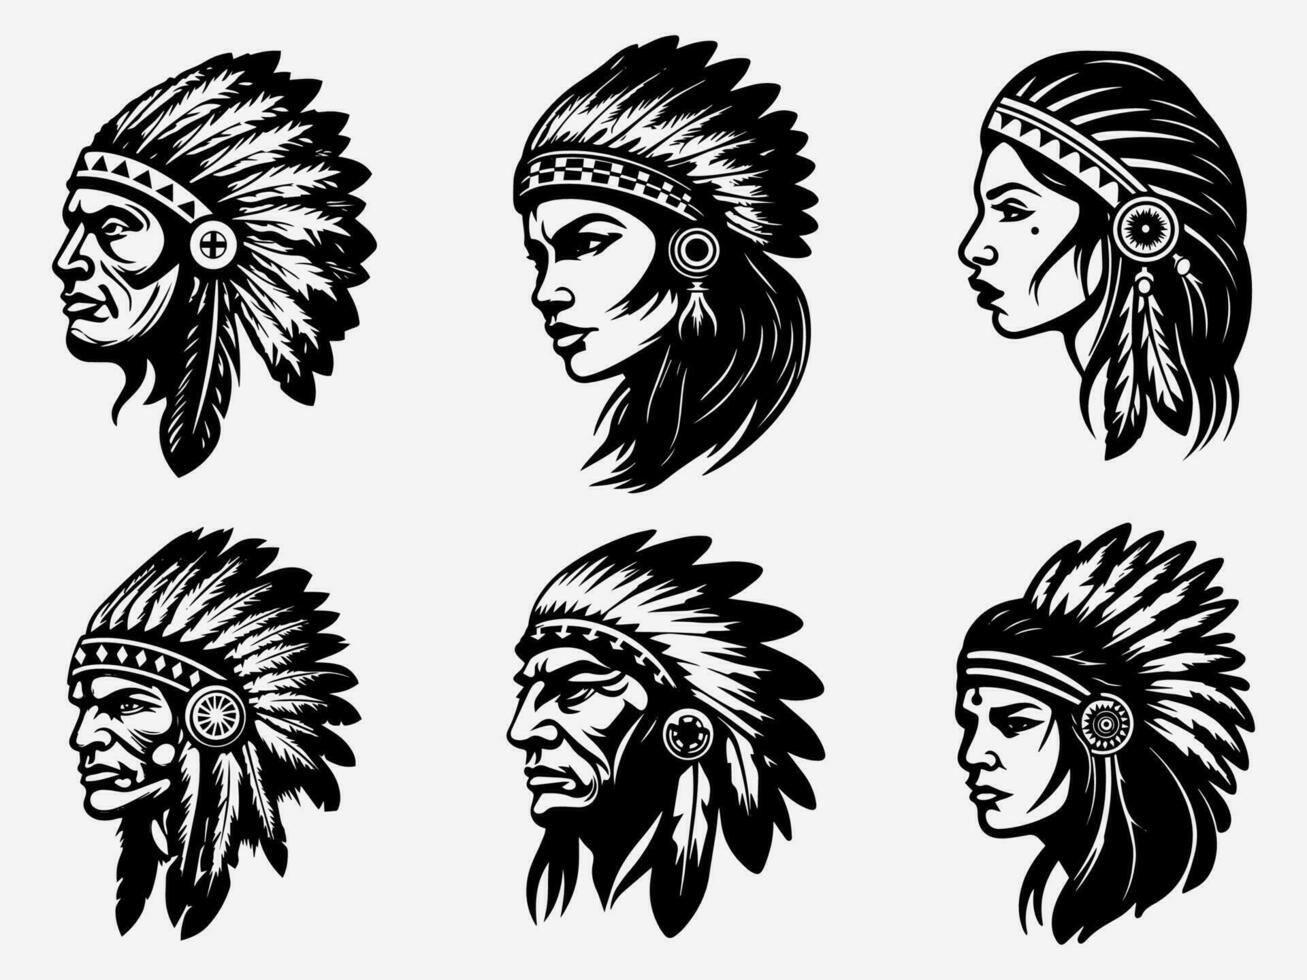 äkta hand dragen illustration av en inföding amerikan indisk huvud, reflekterande elasticitet, tradition, och vördnad för förfäder rötter vektor